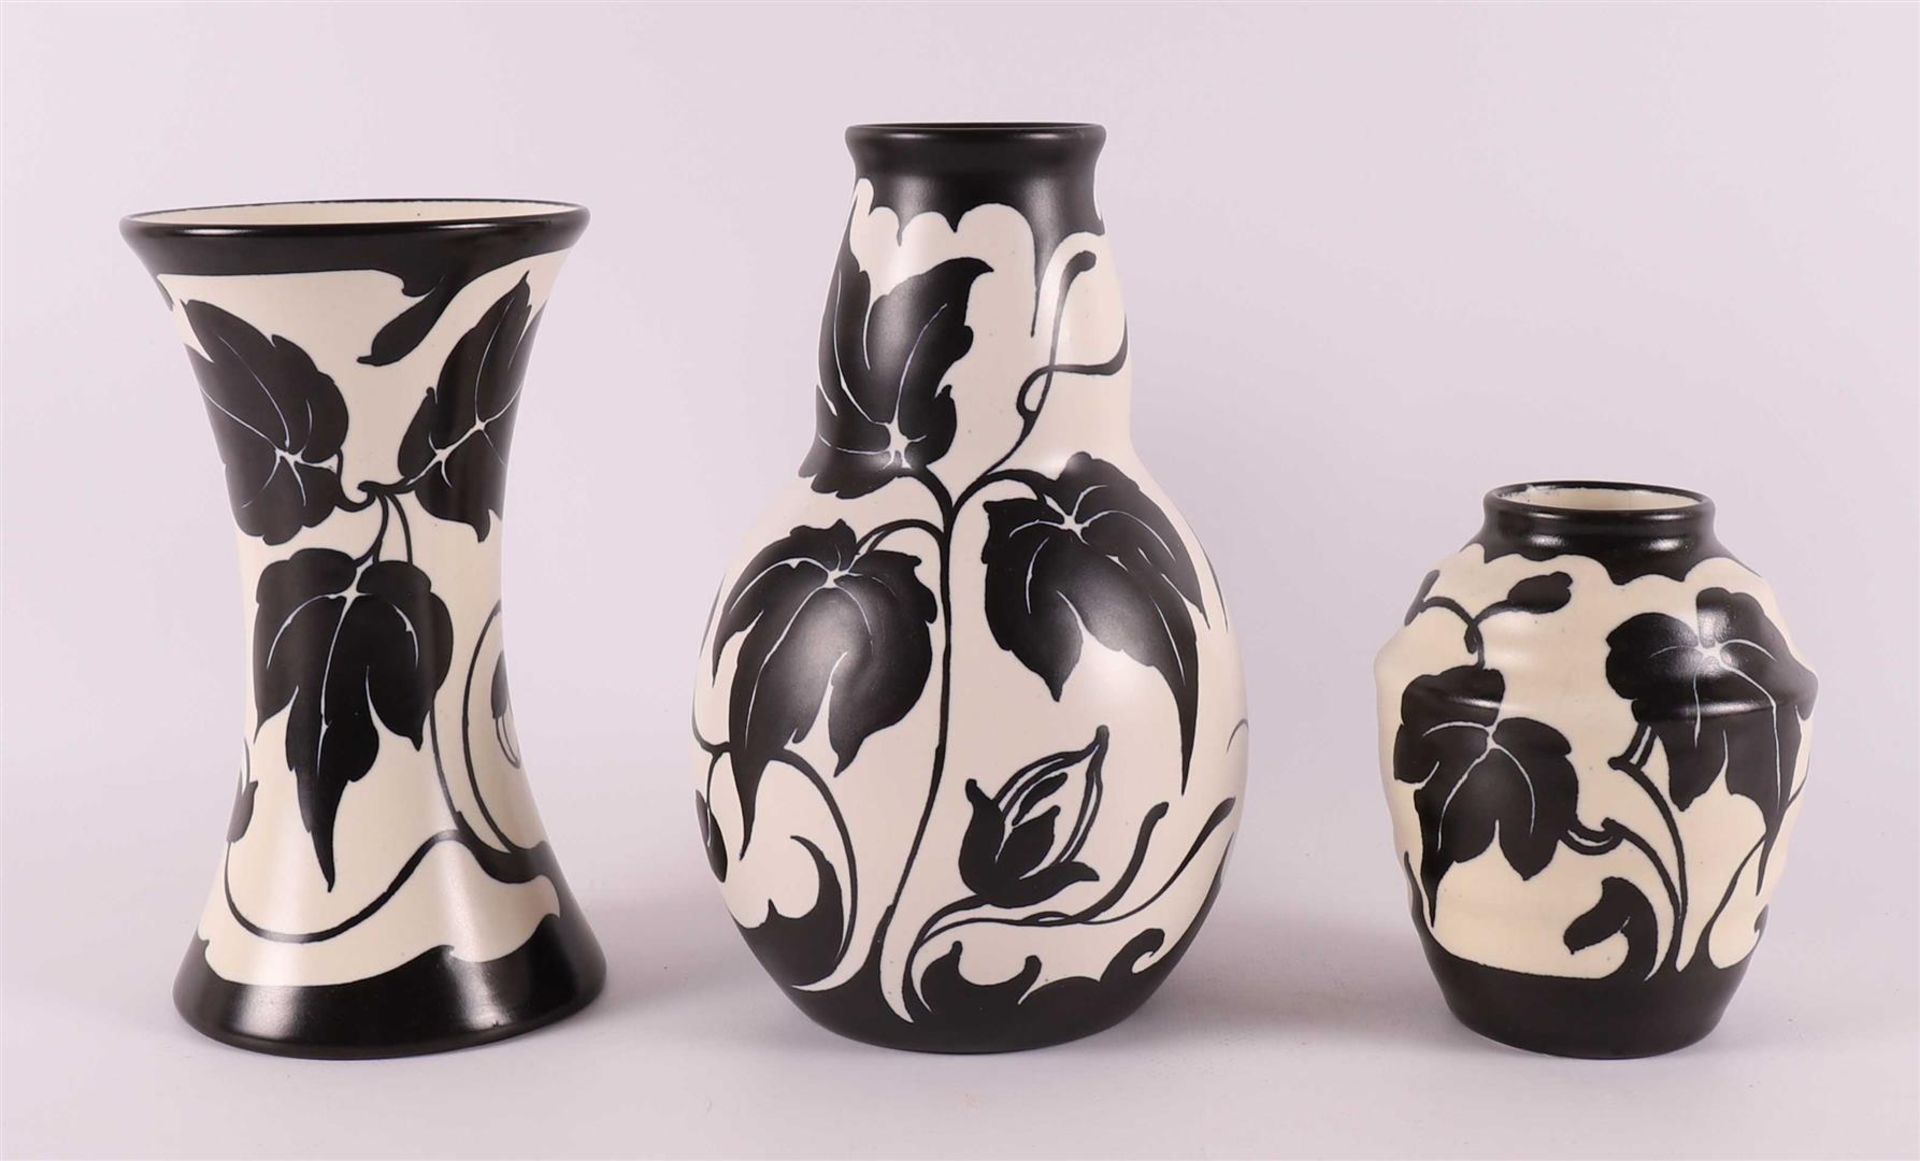 Three black and white earthenware vases, decor 'Fariet', ca. 1930.